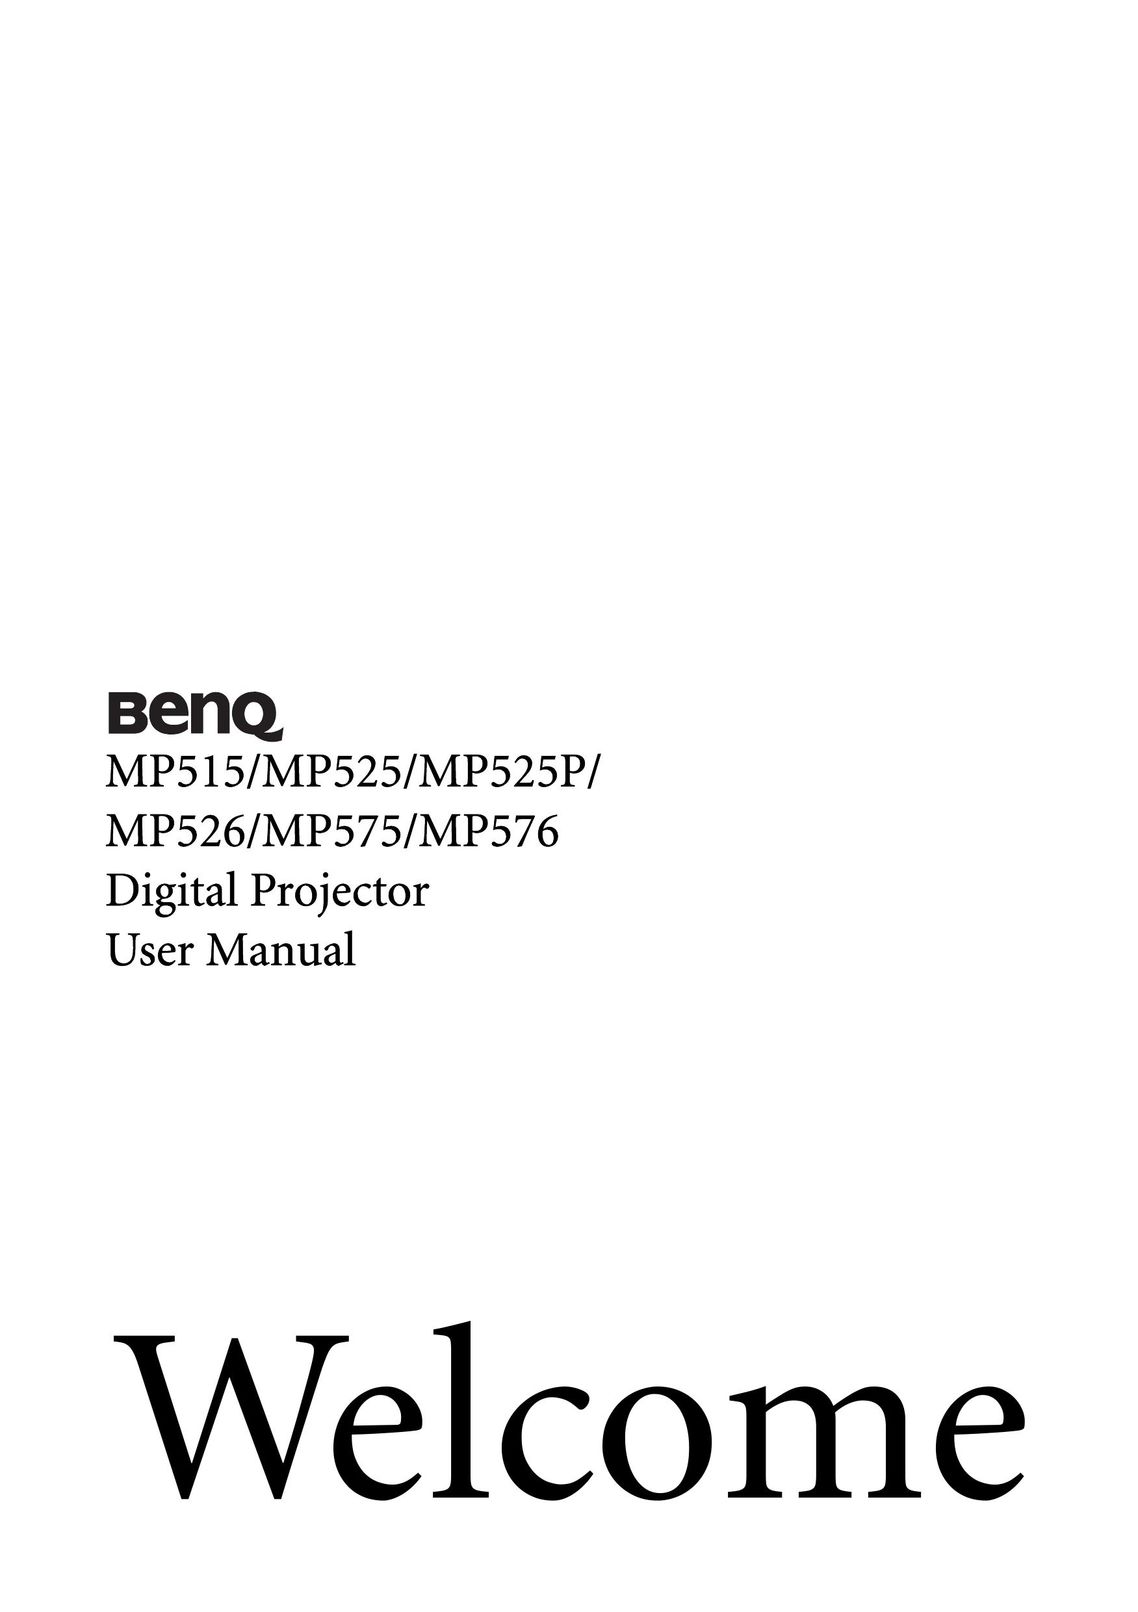 BenQ MP525P Projector User Manual